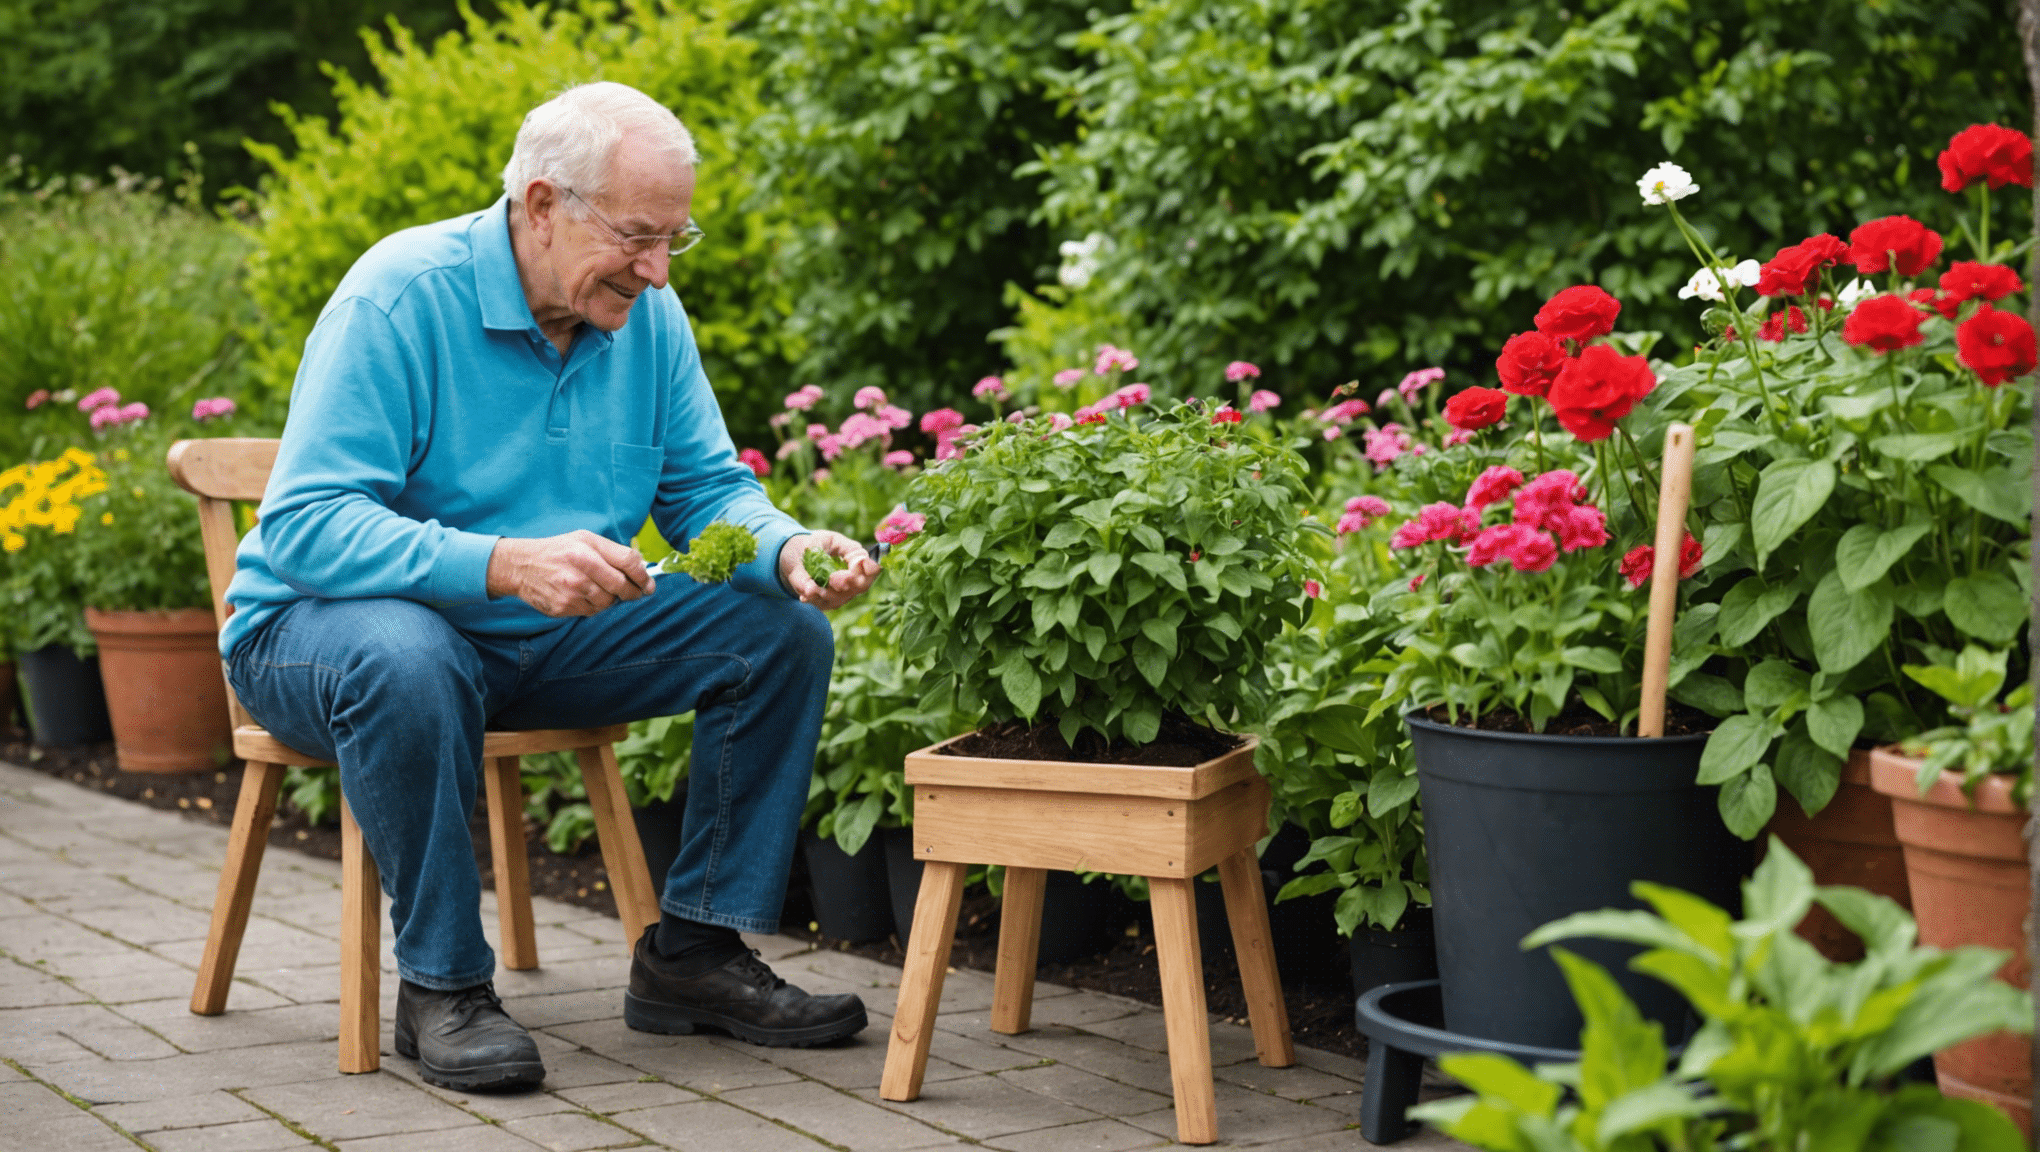 upptäck fördelarna med trädgårdspallar för seniorer, inklusive förbättrad komfort, tillgänglighet och användarvänlighet. ta reda på hur trädgårdsavföring kan göra trädgårdsarbete till en roligare och mer lätthanterlig aktivitet för äldre individer.